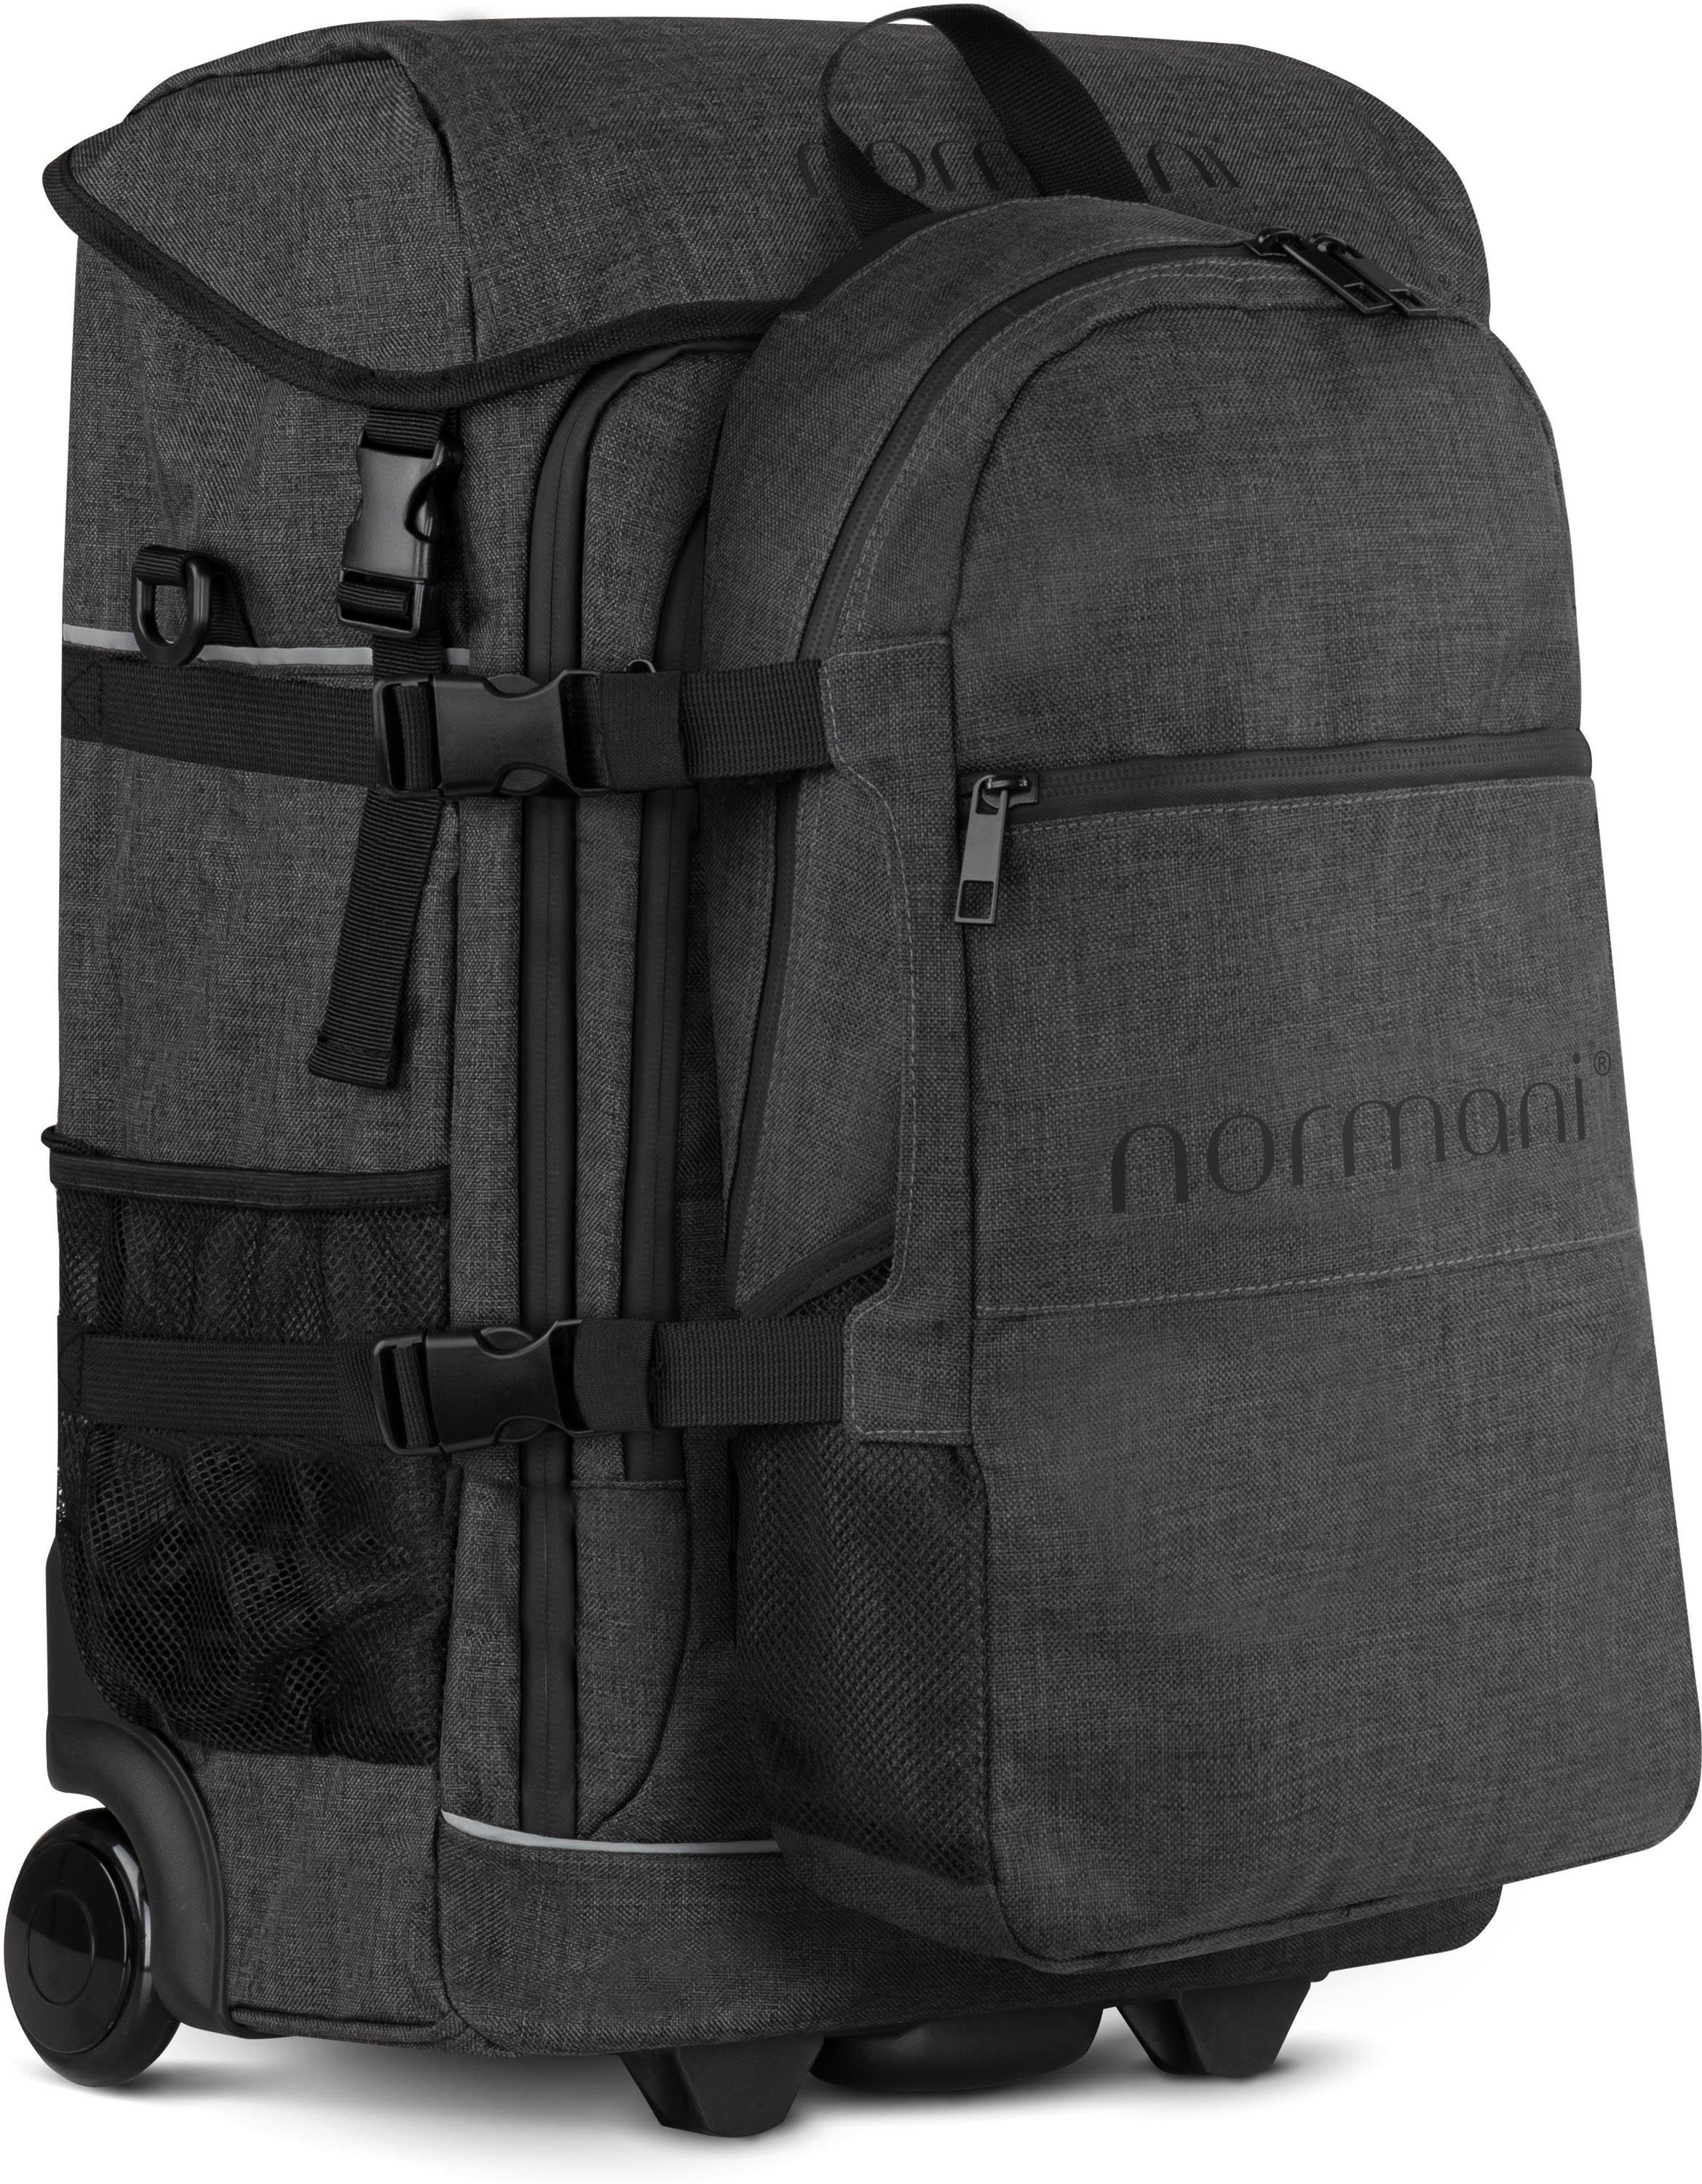 Trolley mit und kleinem Trolleyfuktion Rucksack, mit Reisetasche Rucksackfuntkion normani Handgepäck in Rucksack Maßen